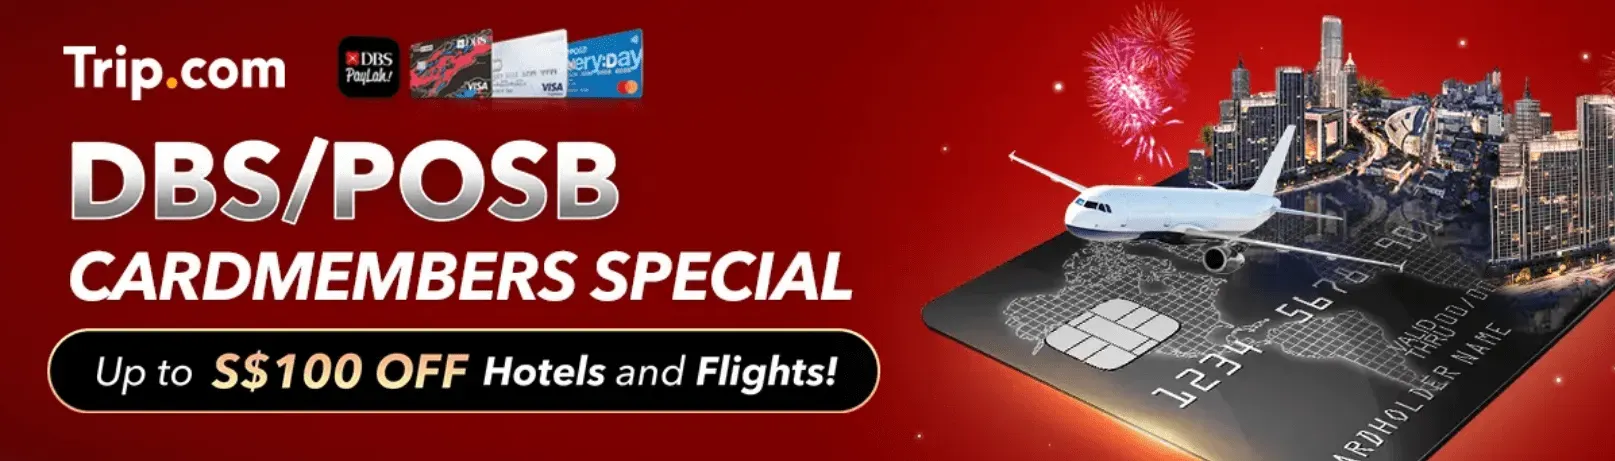 Trip.com Promo Code Singapore: DBS/POSB Cardmember Special